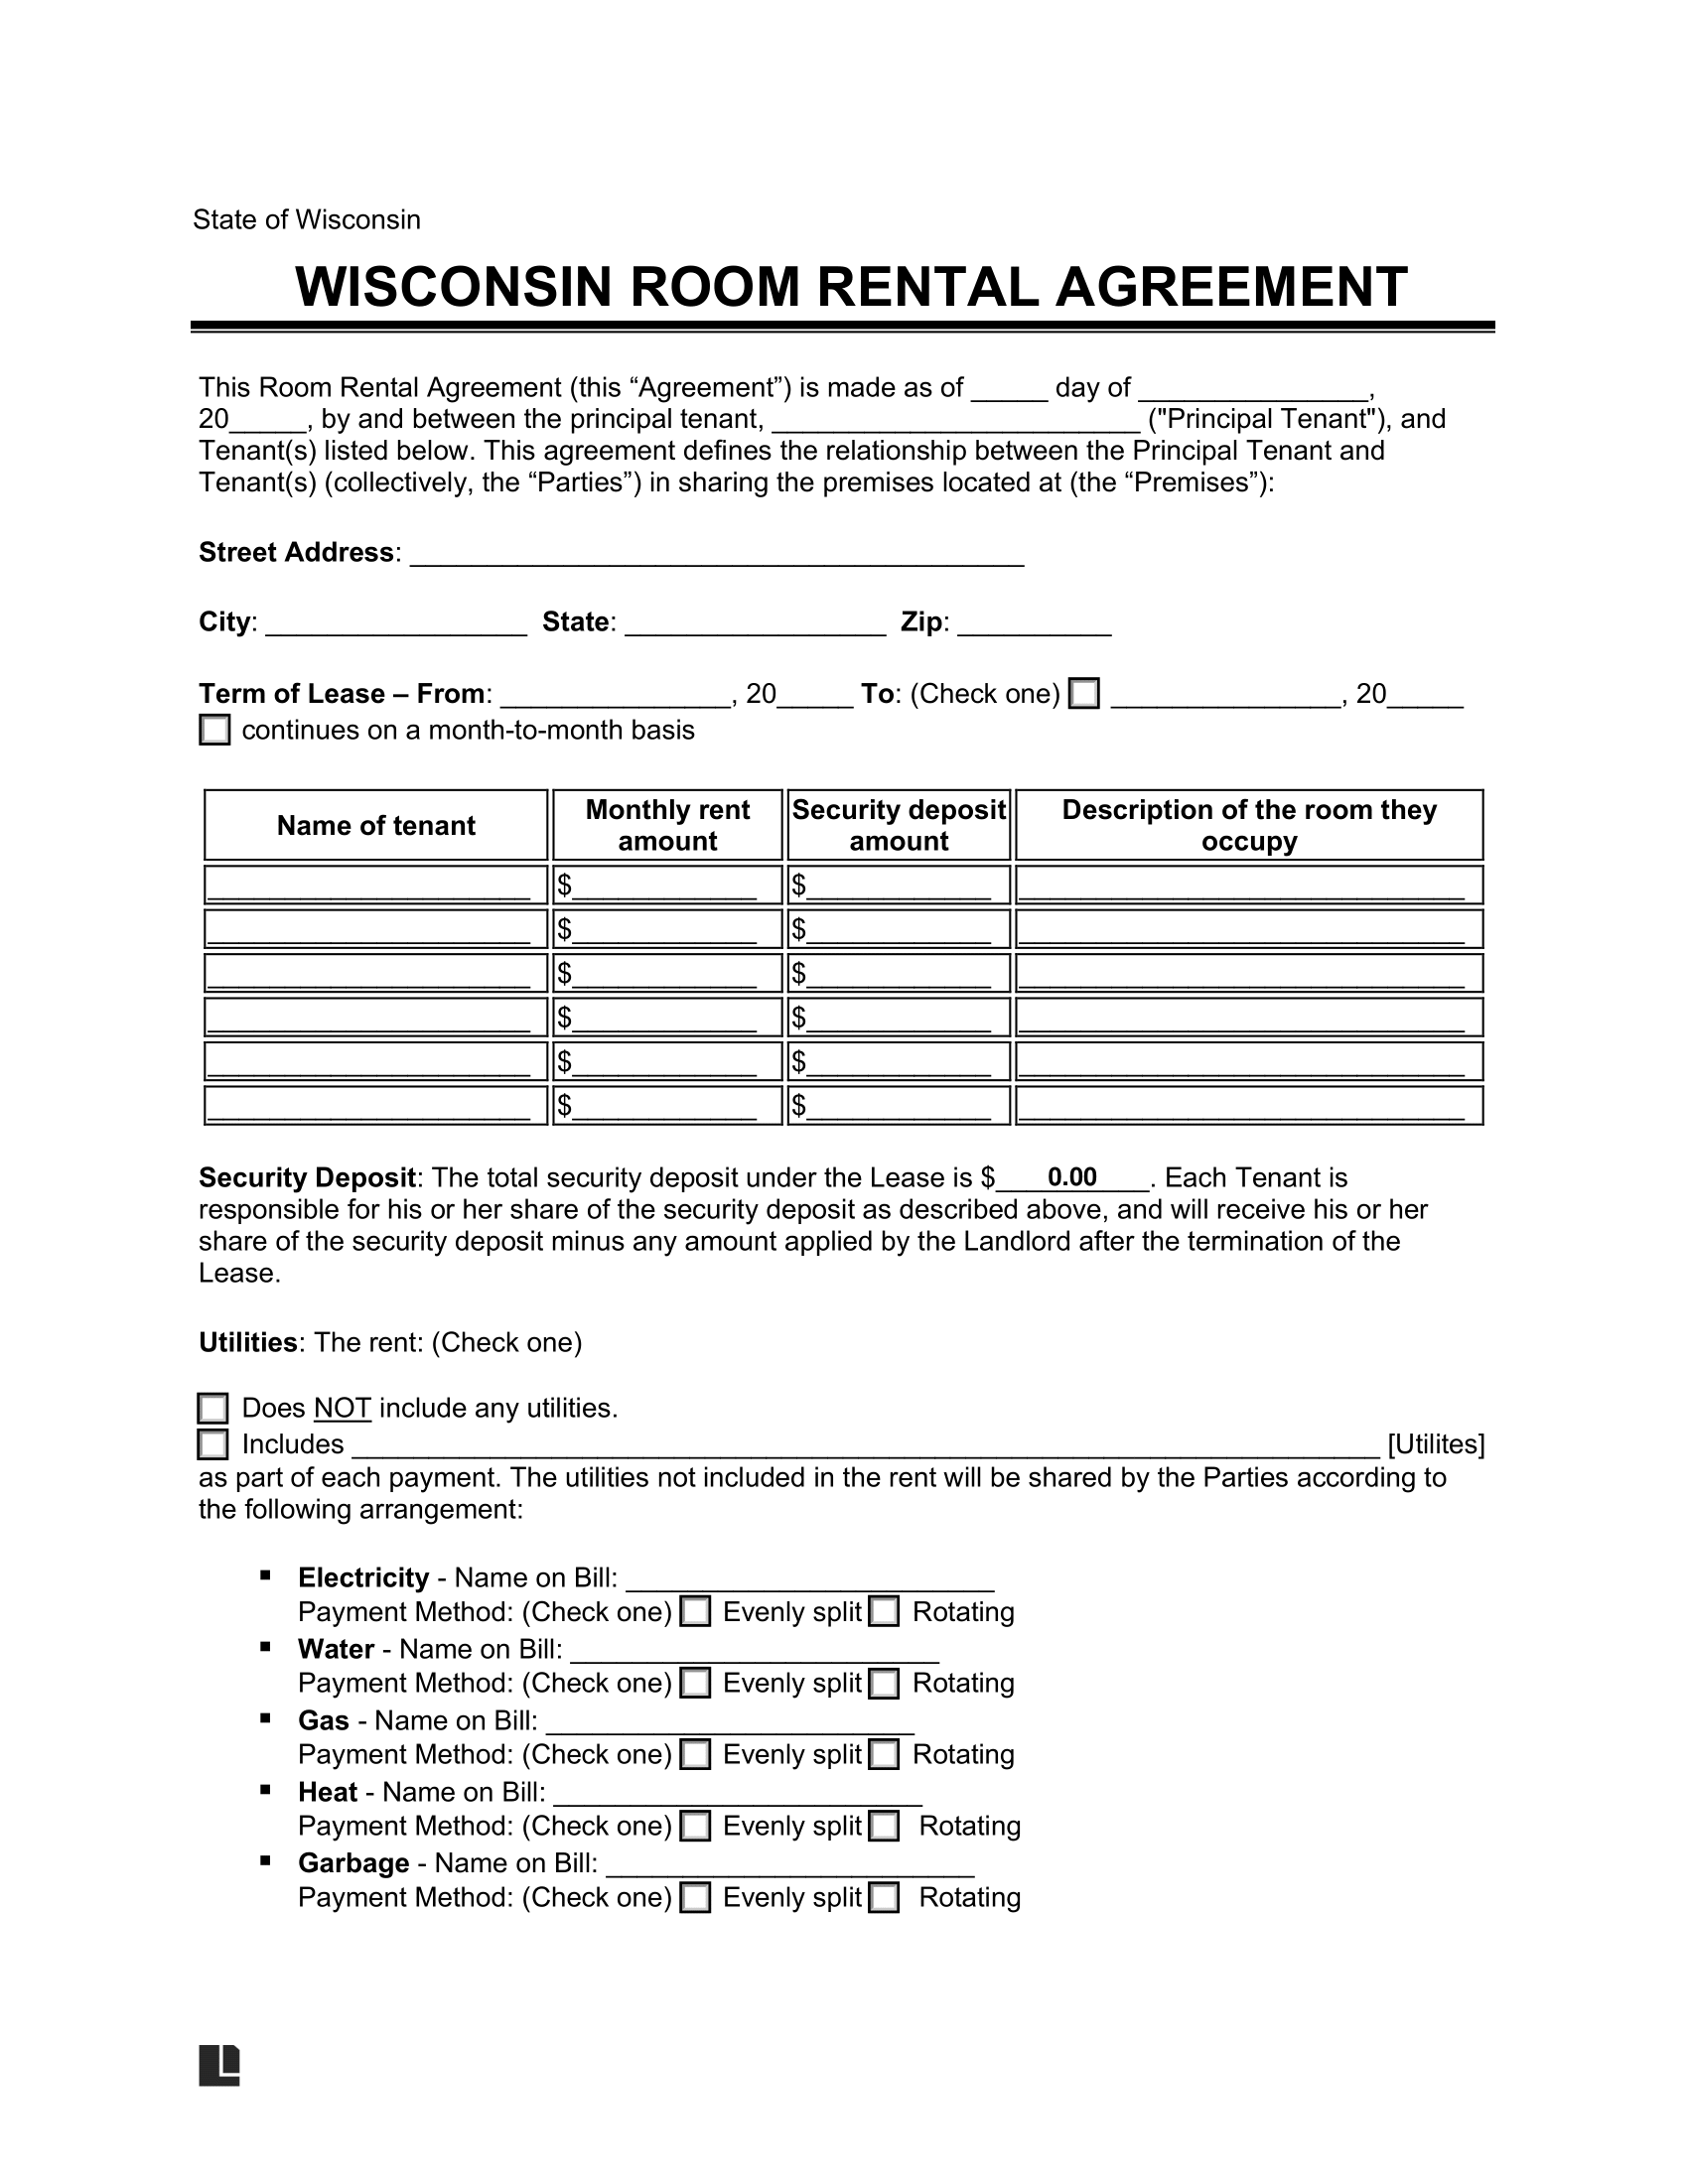 Wisconsin Room Rental Agreement